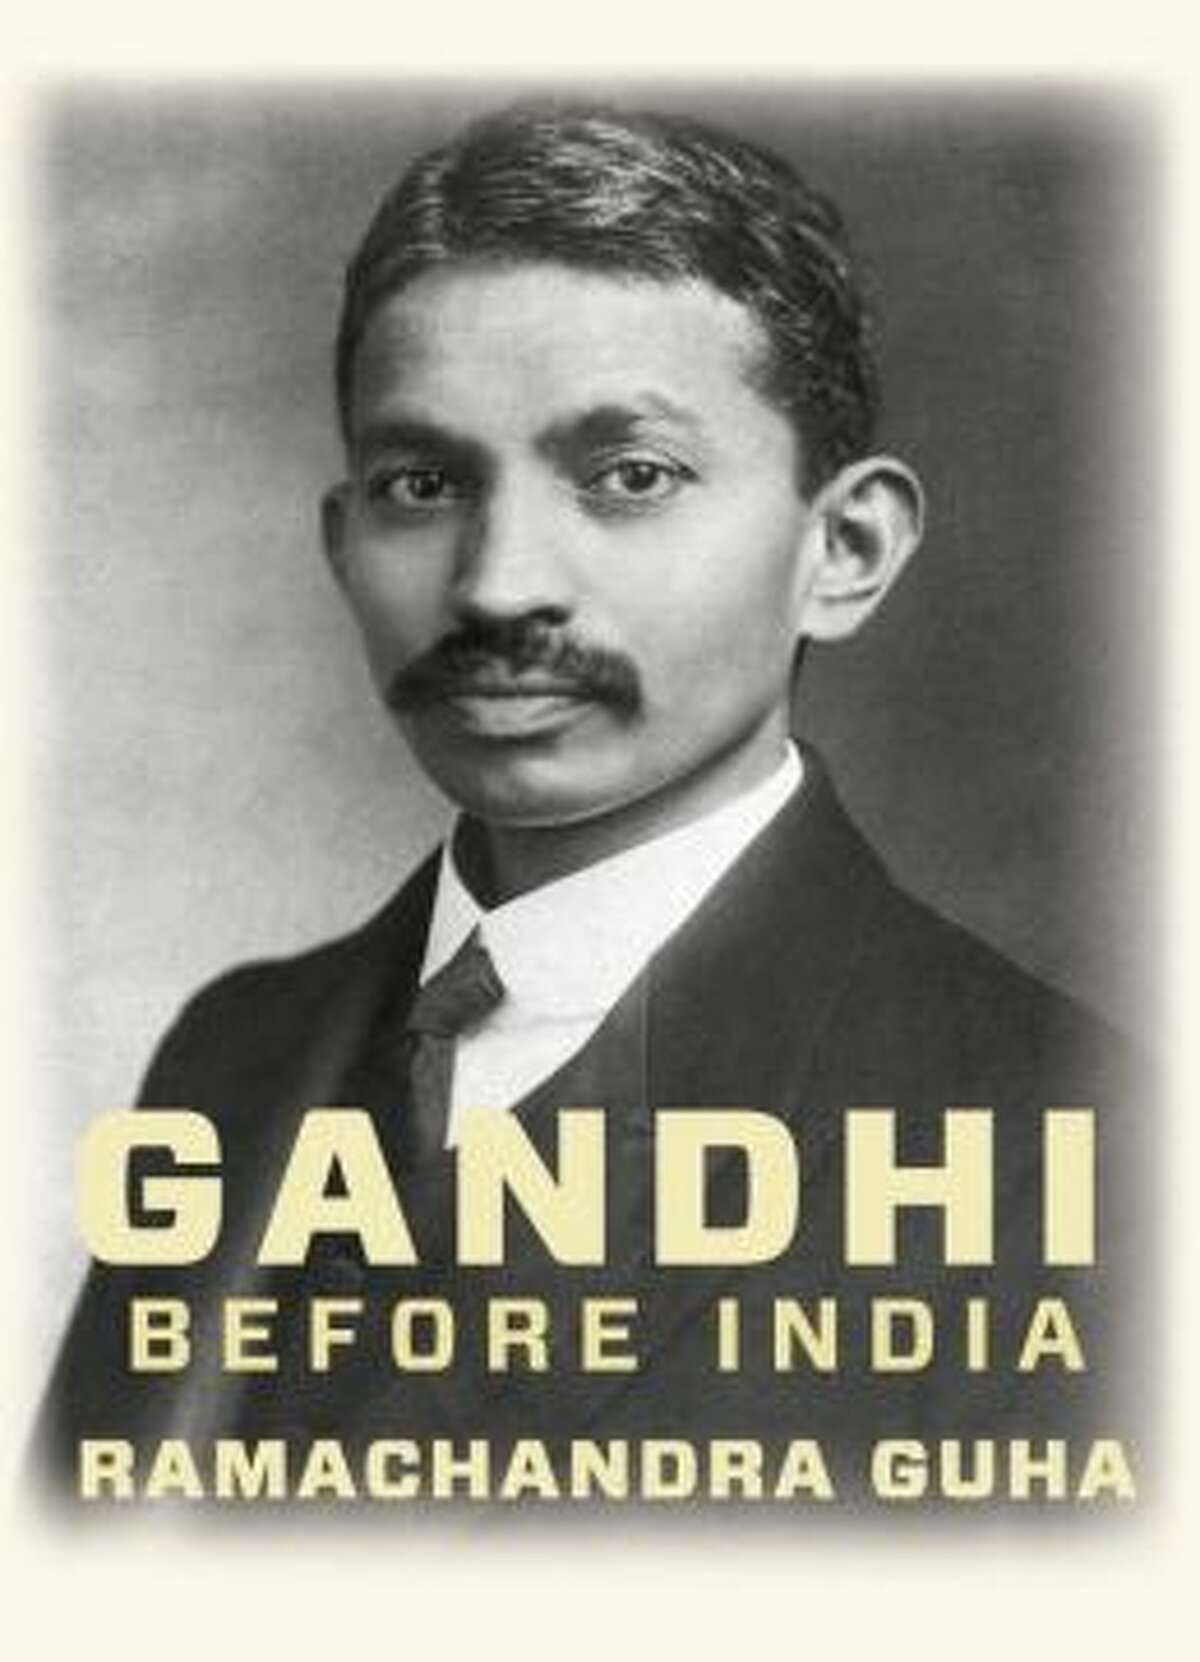 biography of prakash gandhi